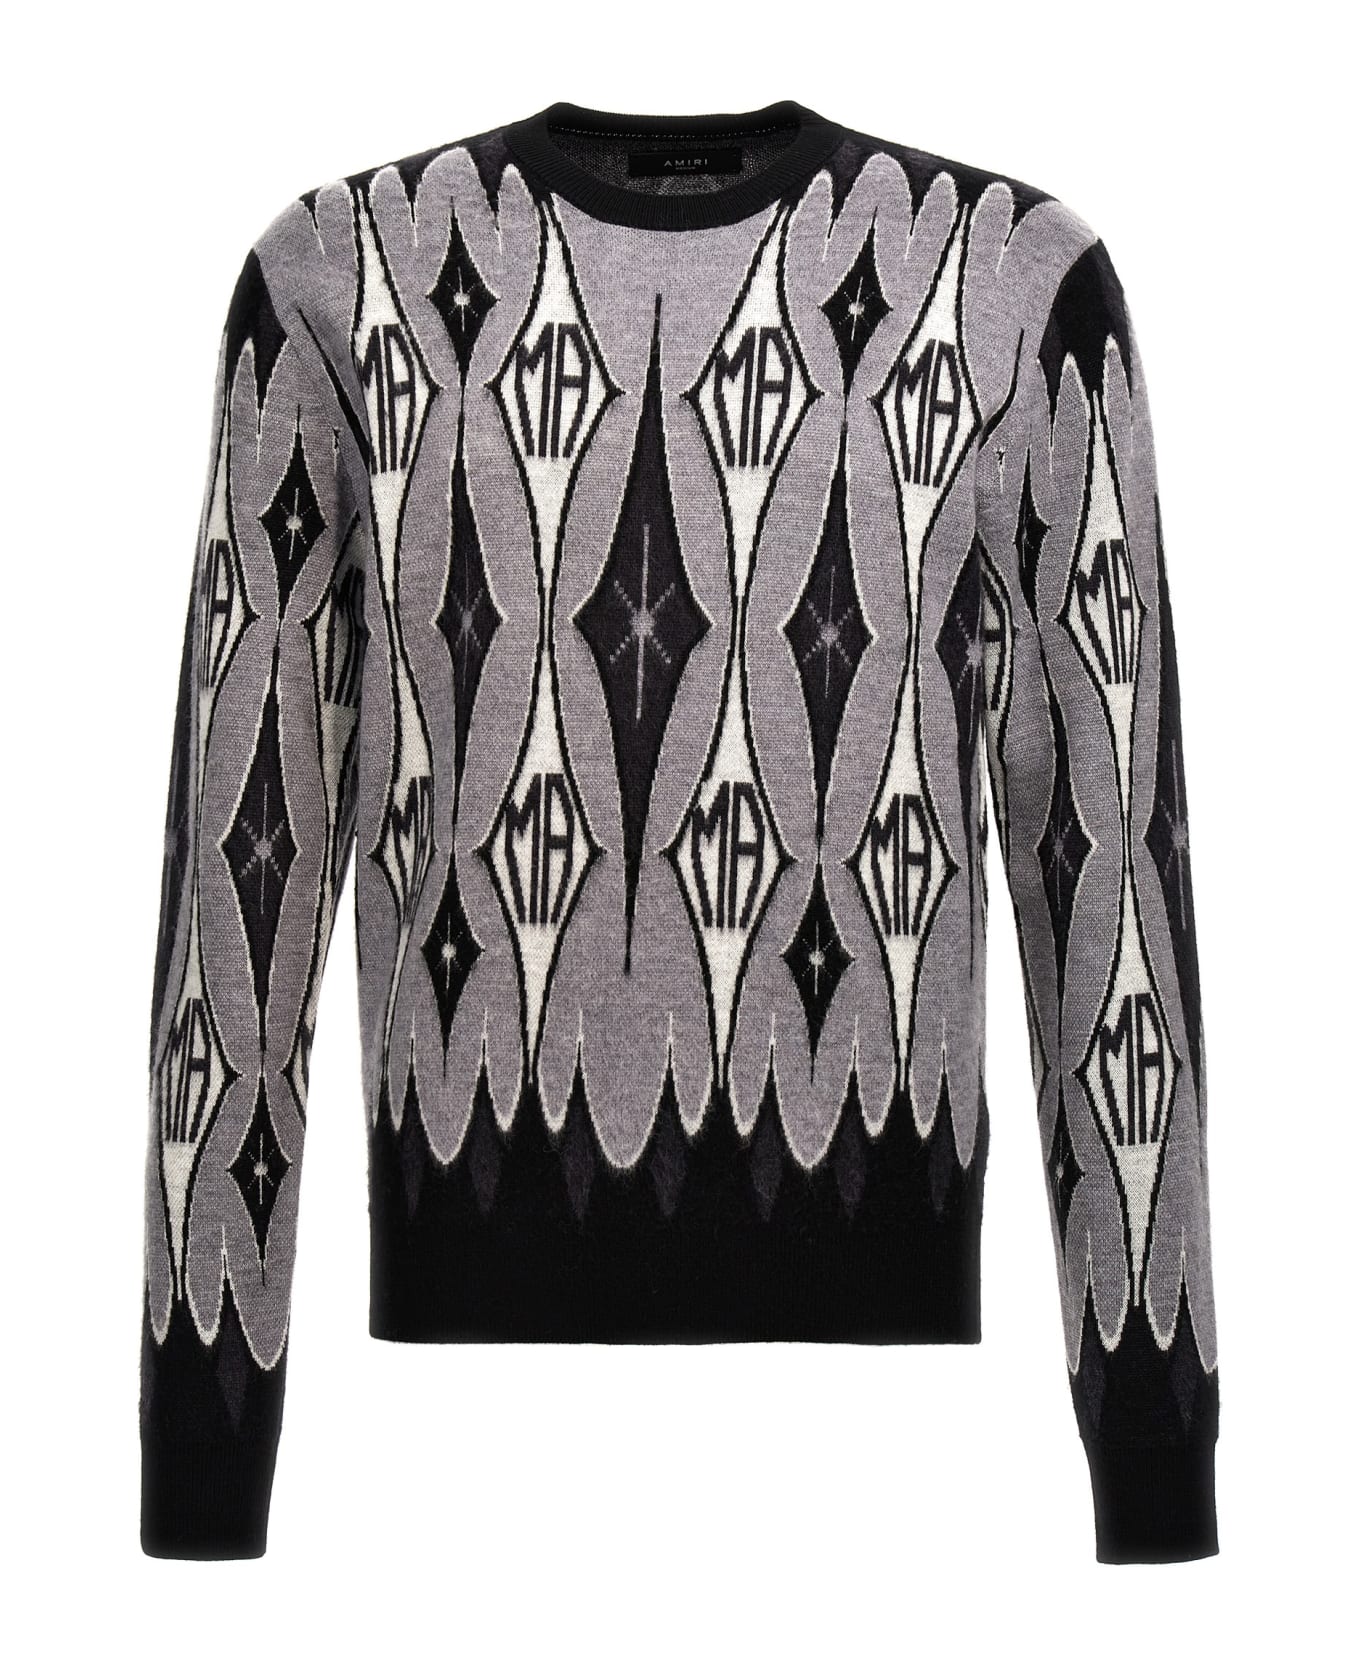 AMIRI 'argyle Jacquard' Sweater - Black ニットウェア